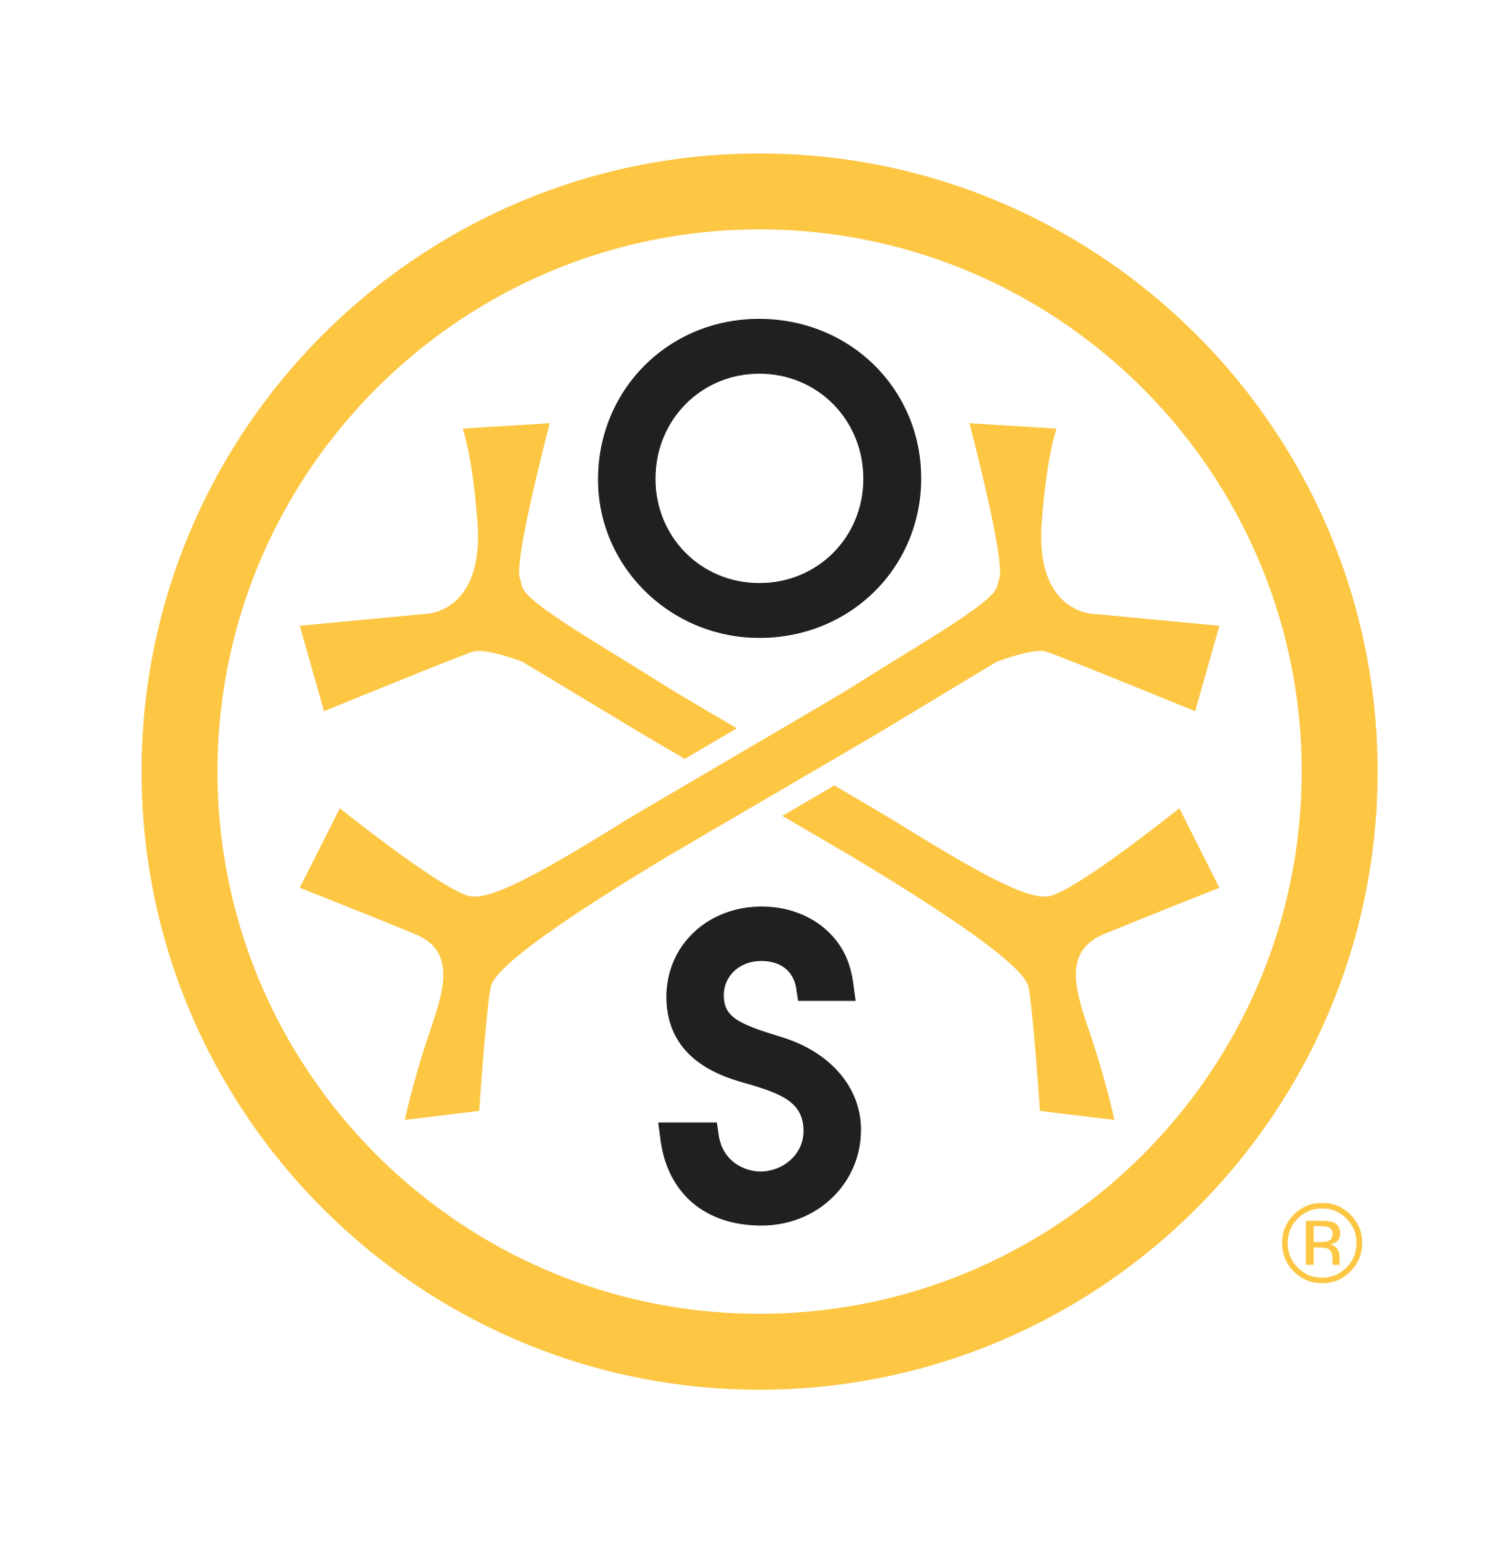 Osteostrong Logo